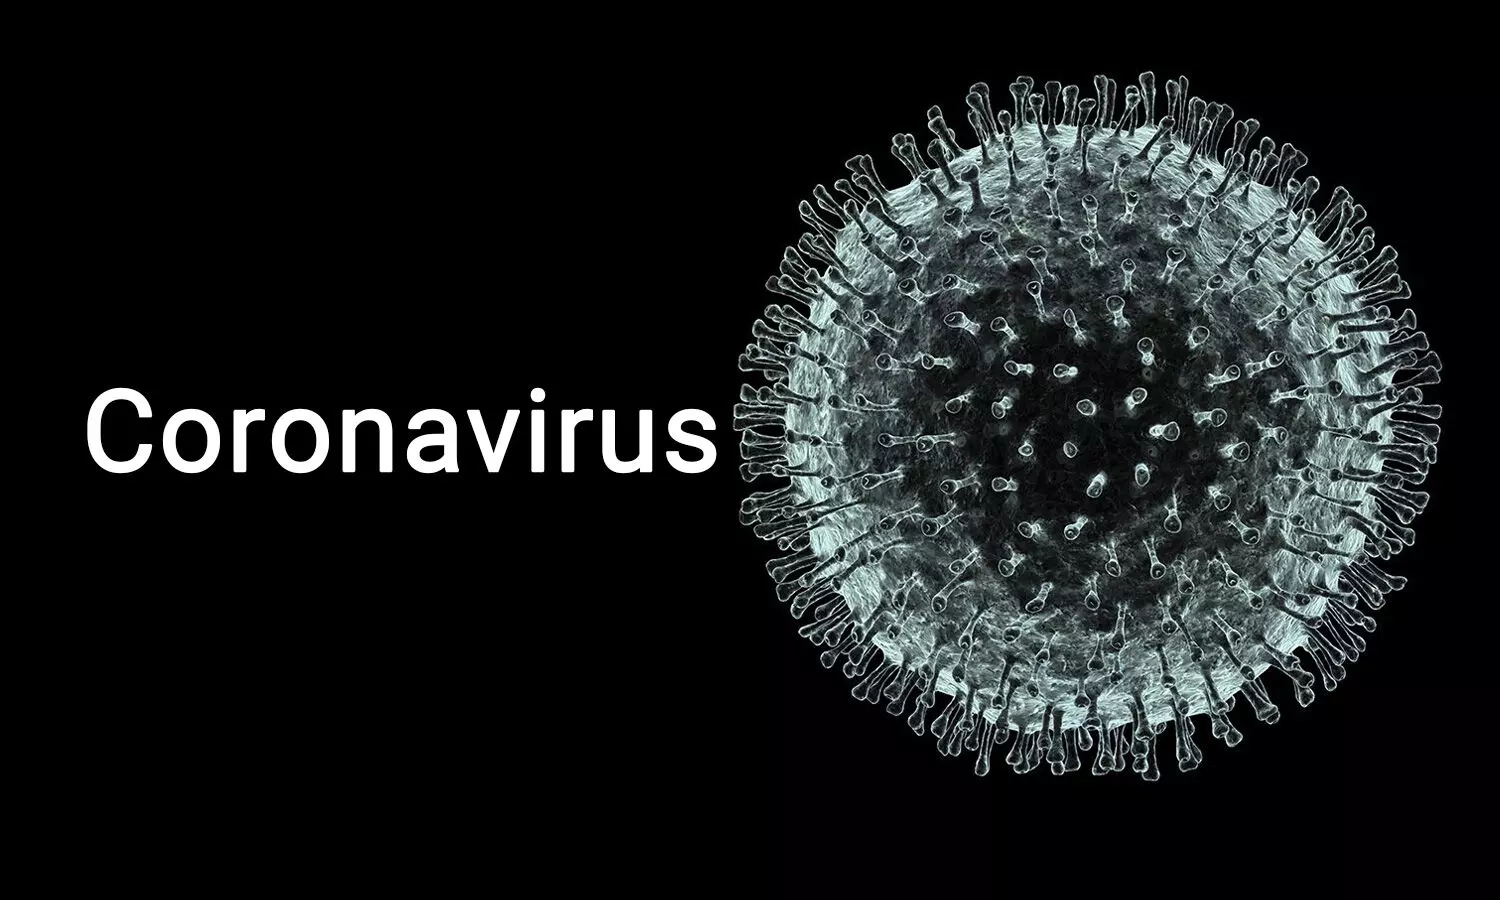 Coronavirus Update: 3 more cases detected in India